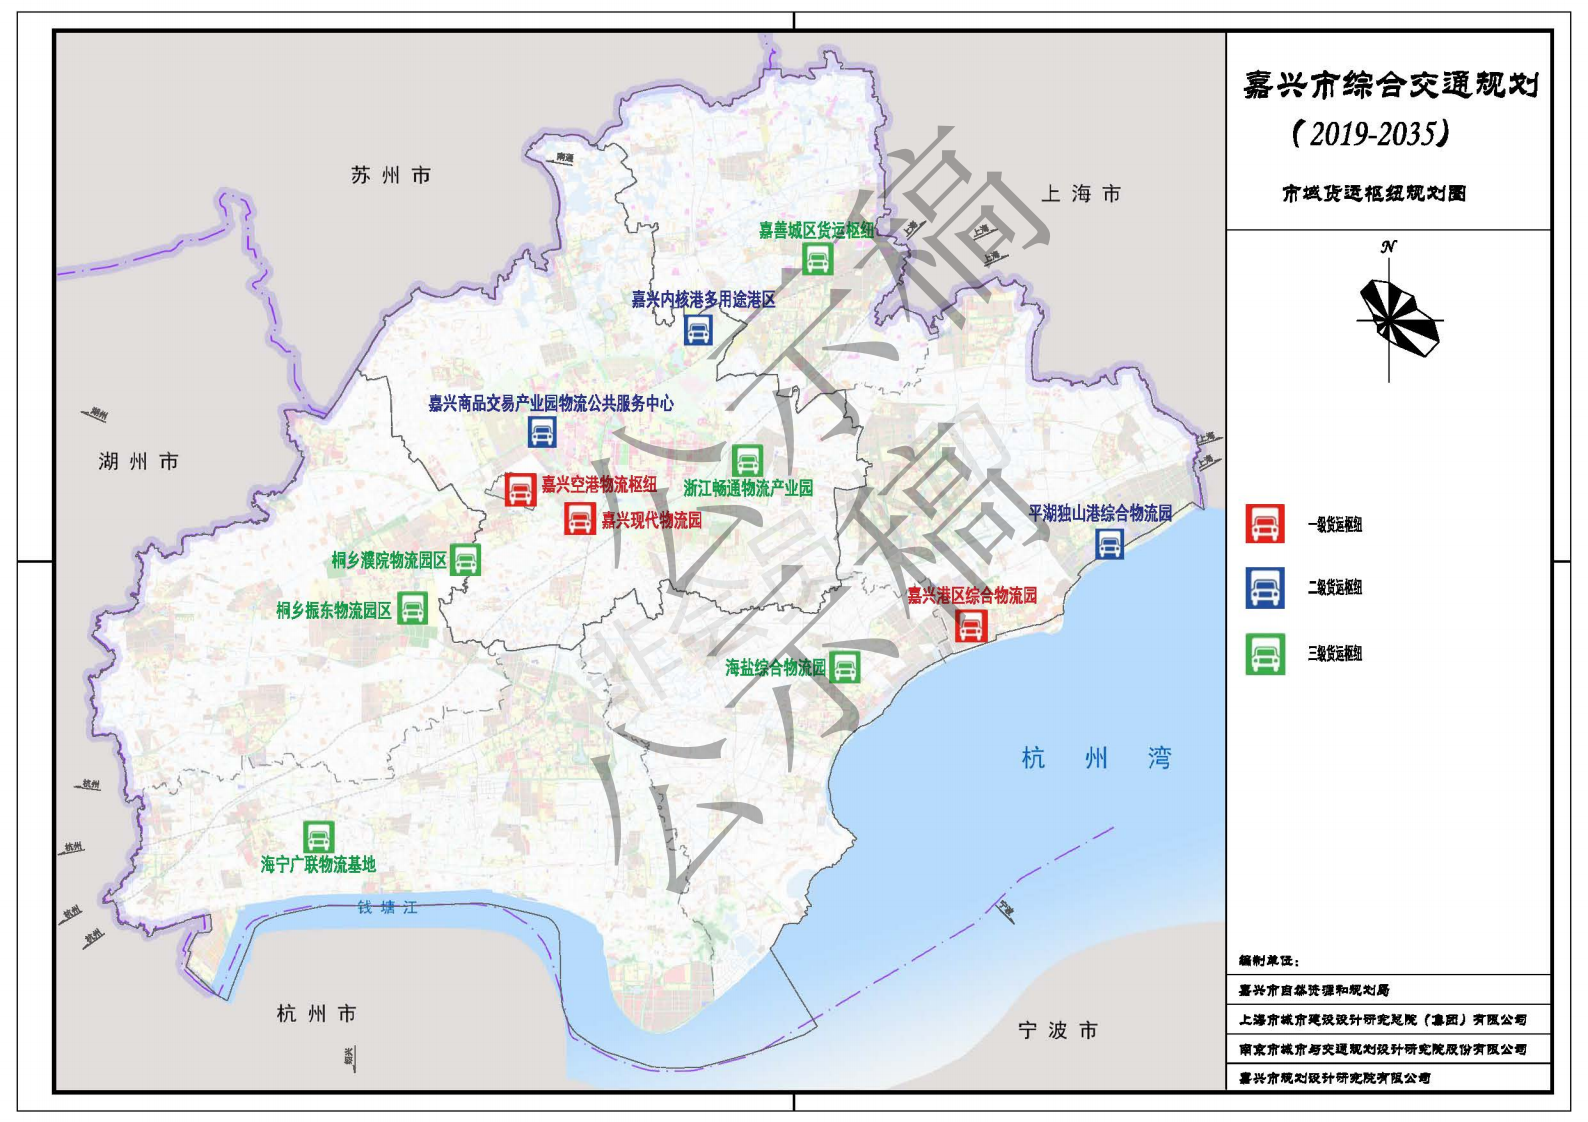 《嘉兴市综合交通规划(2019-2035)》批前公告公示!